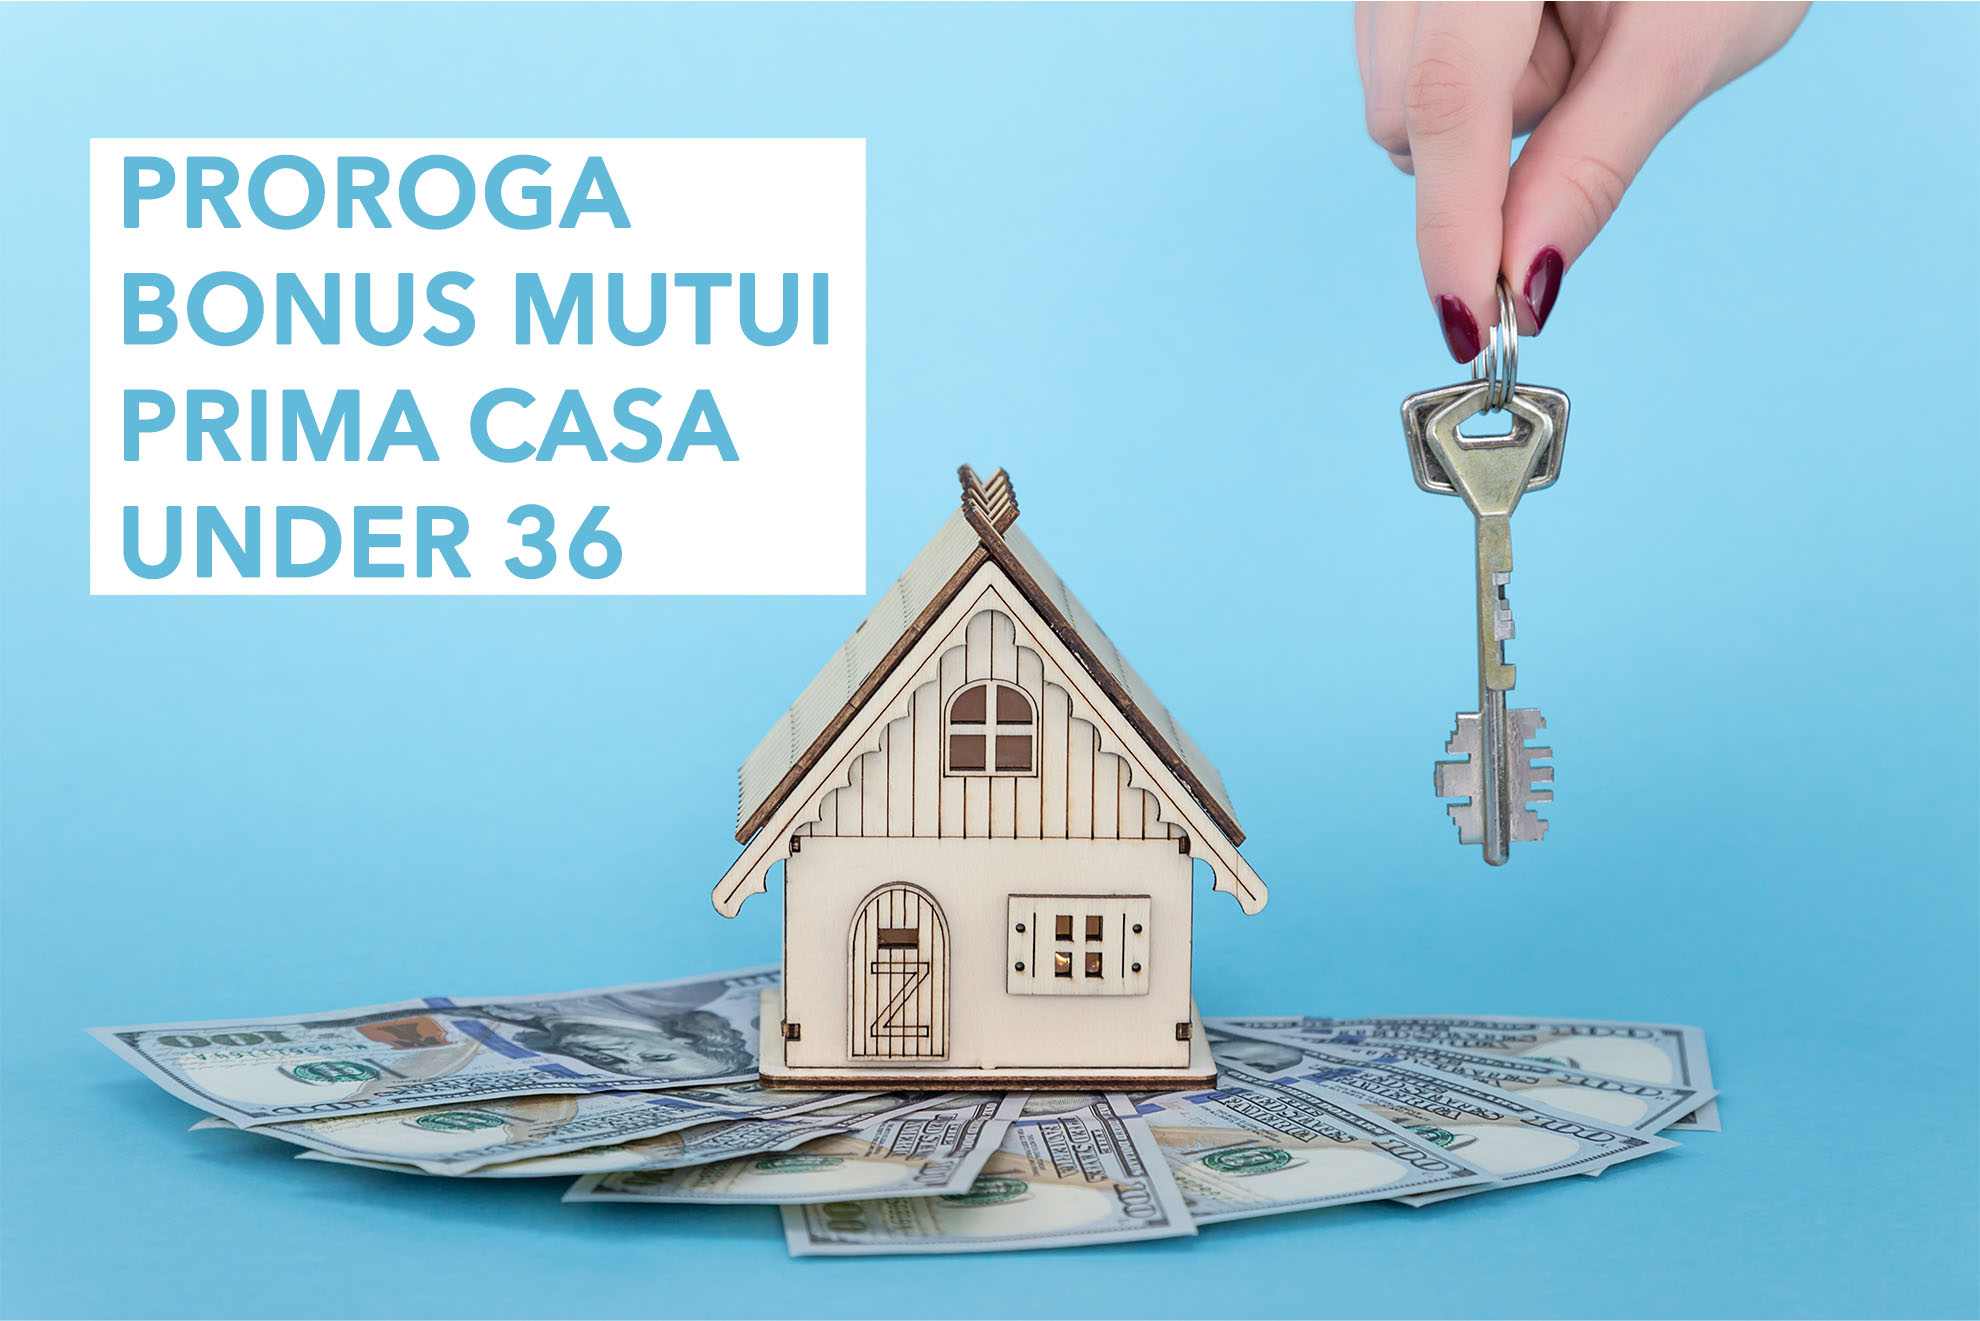 Proroga bonus mutui prima casa under 36